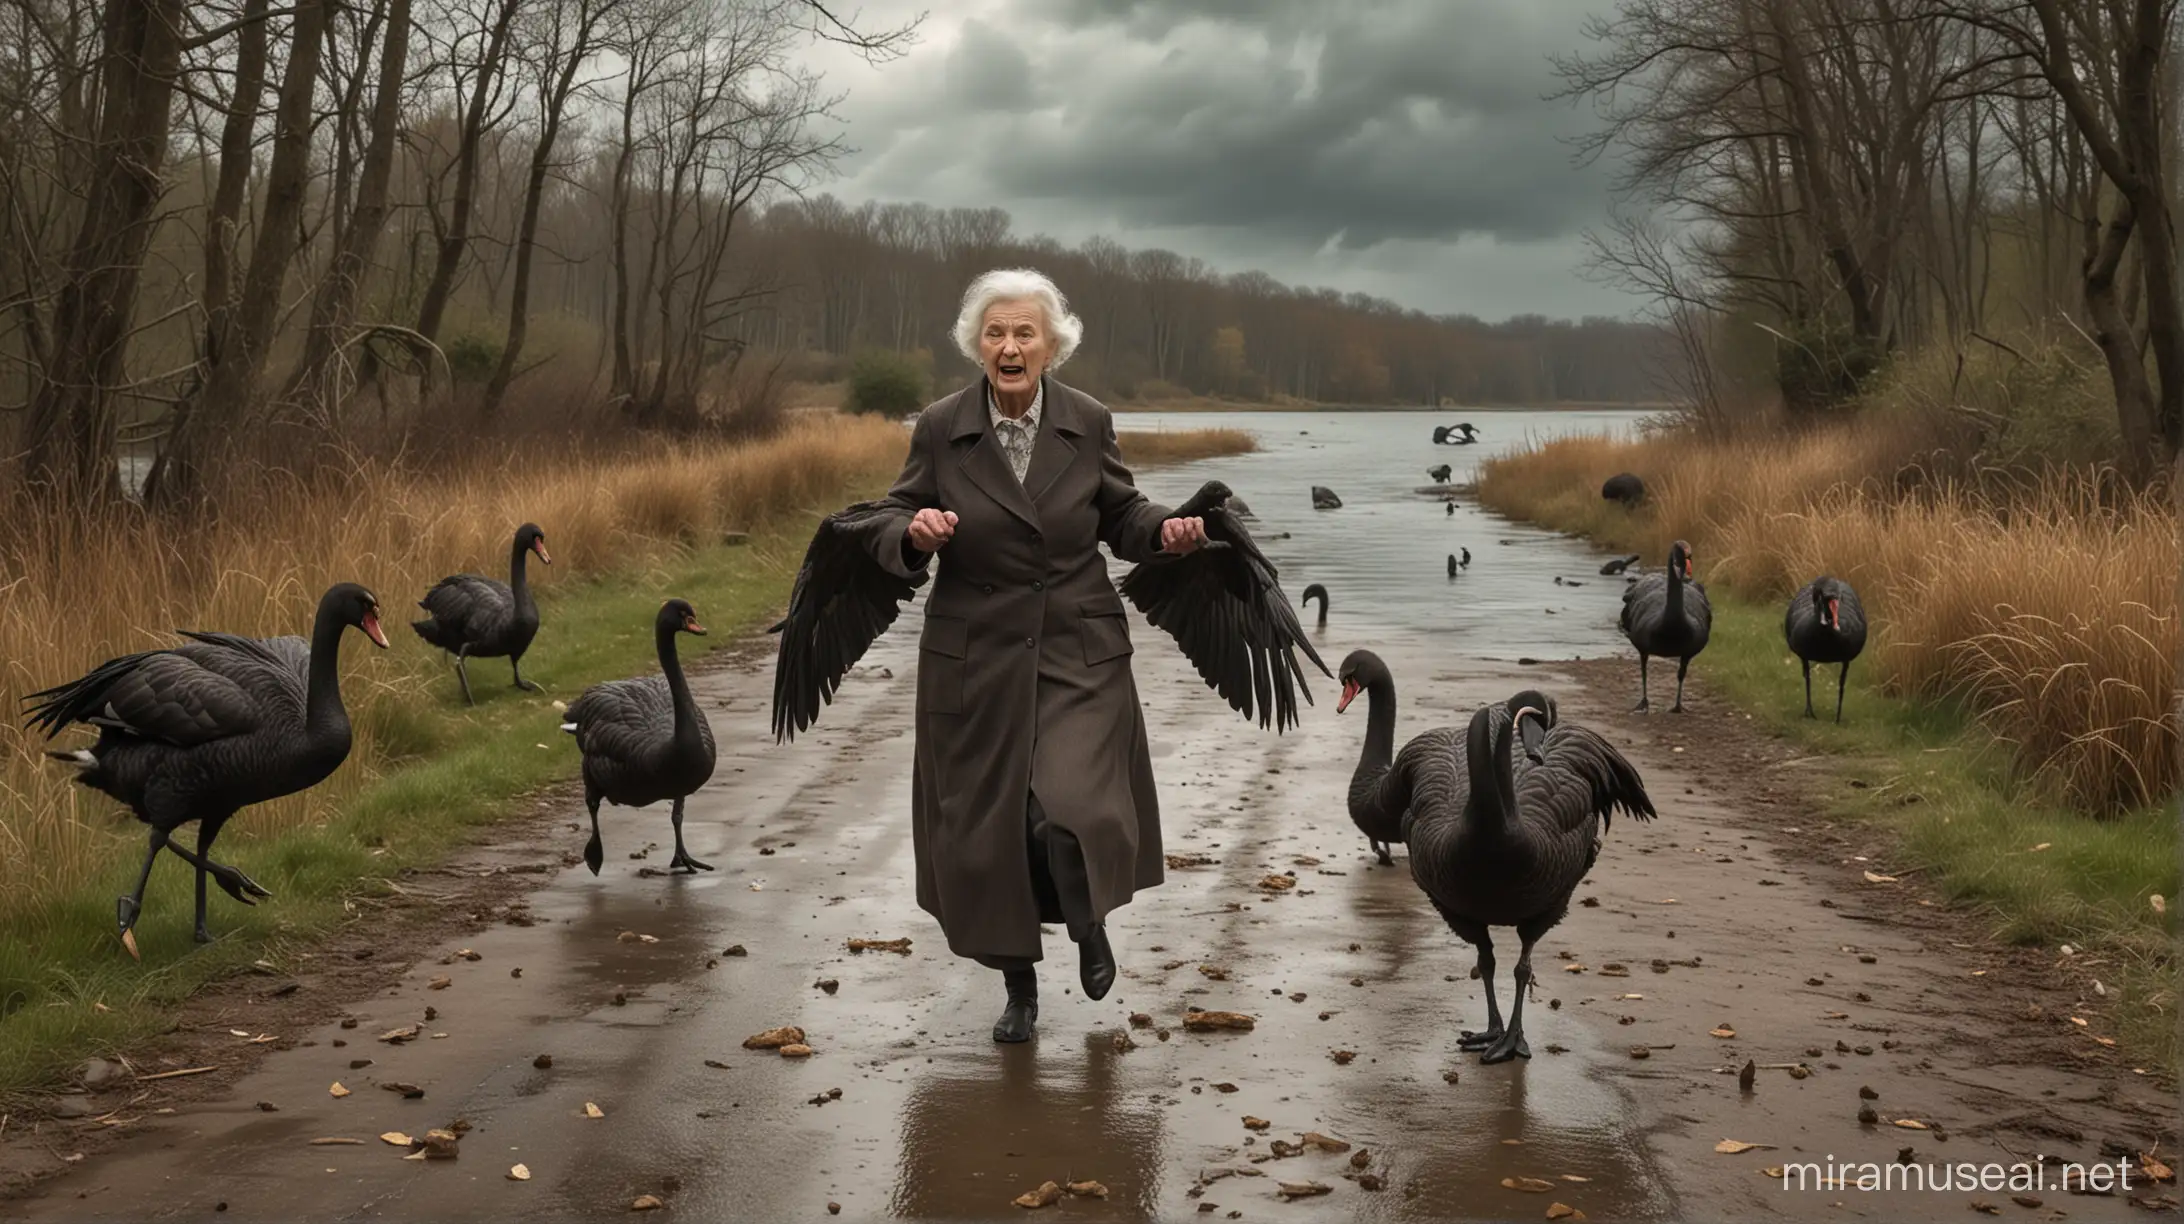 Elderly Woman Fleeing Black Swans in Stormy Lakeside Pursuit